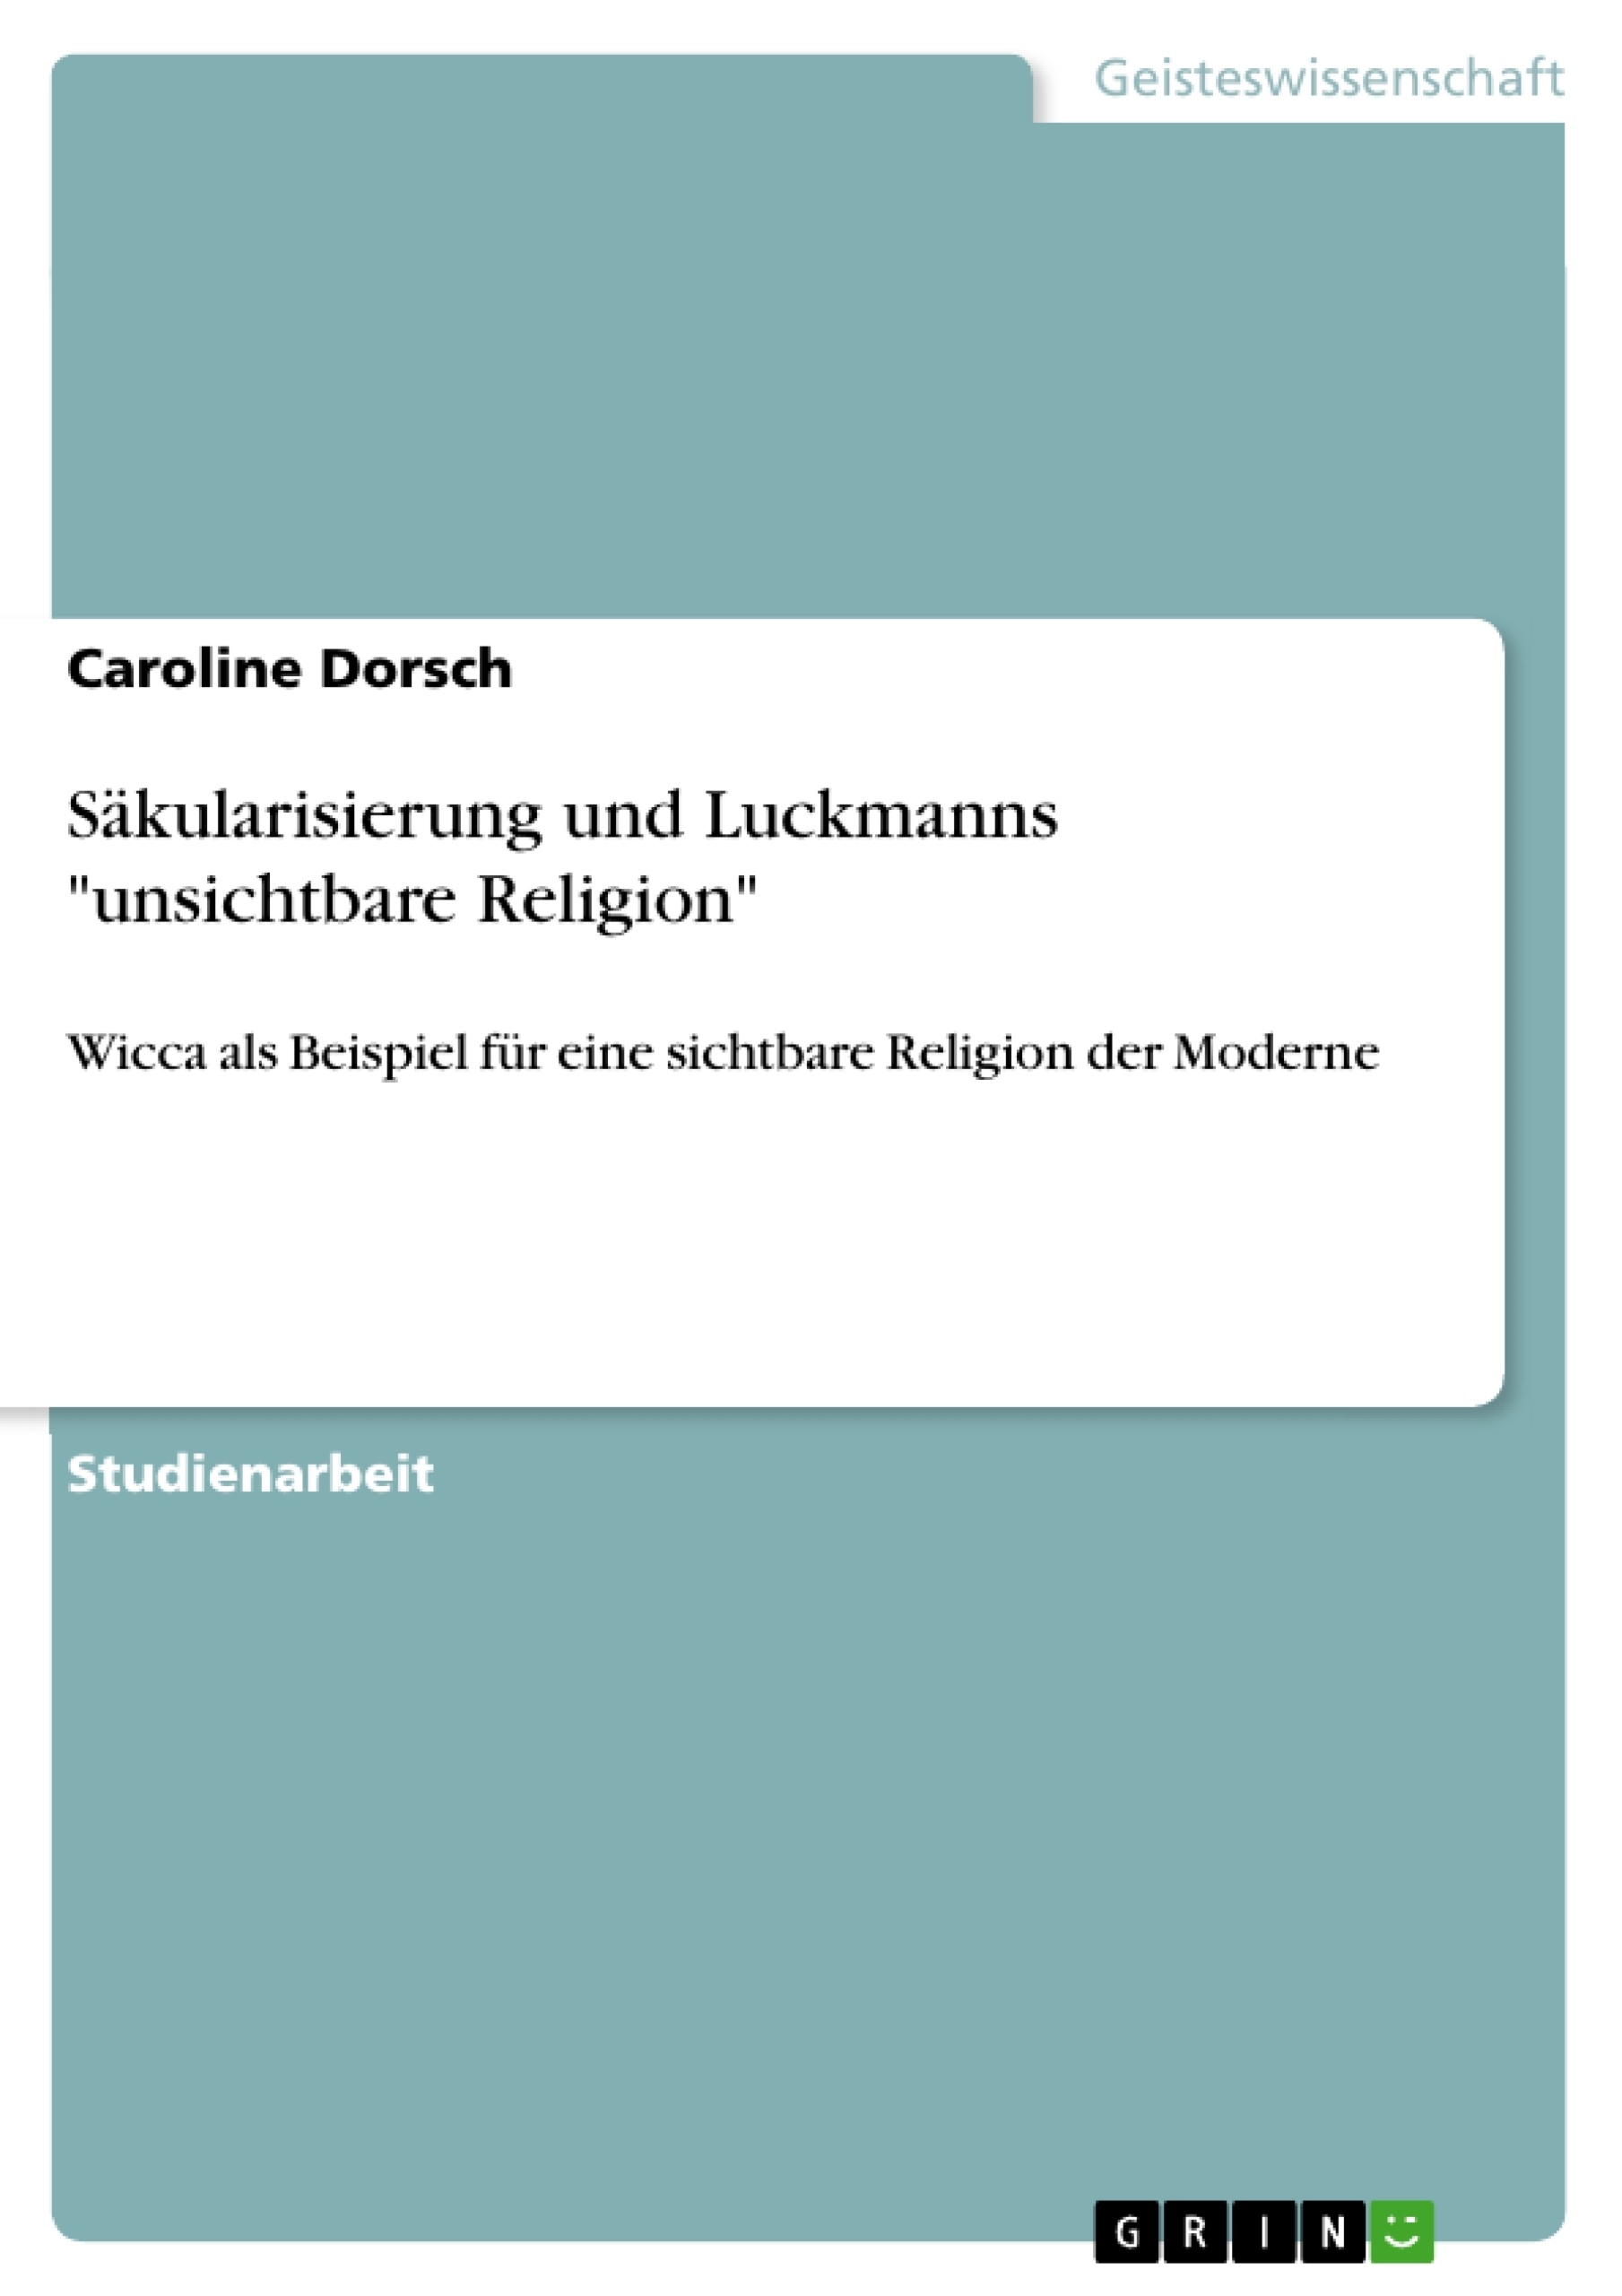 Título: Säkularisierung und Luckmanns "unsichtbare Religion"